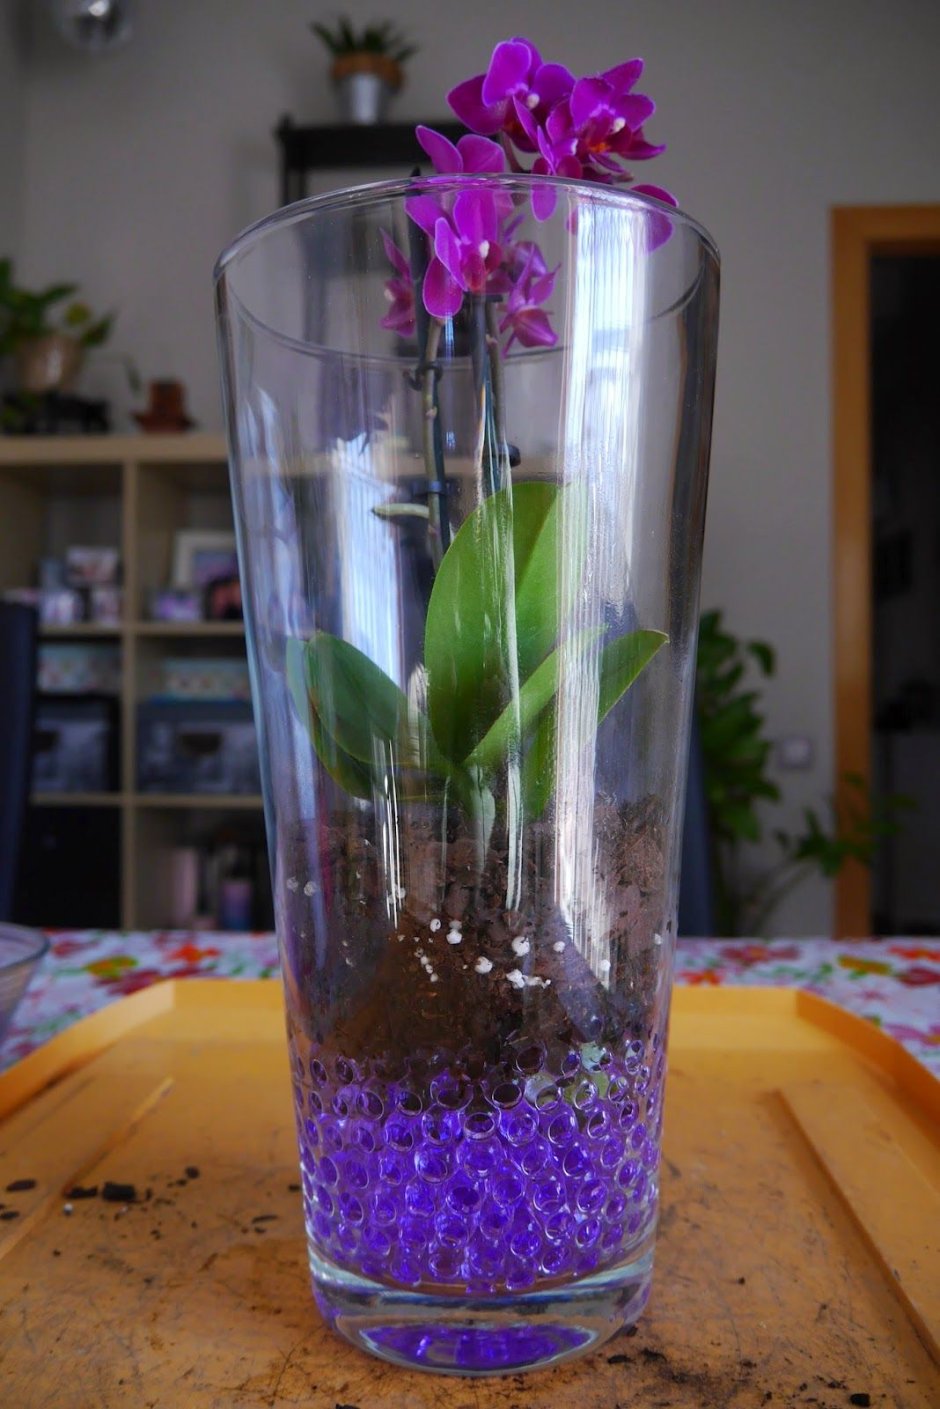 Орхидеи в вазах